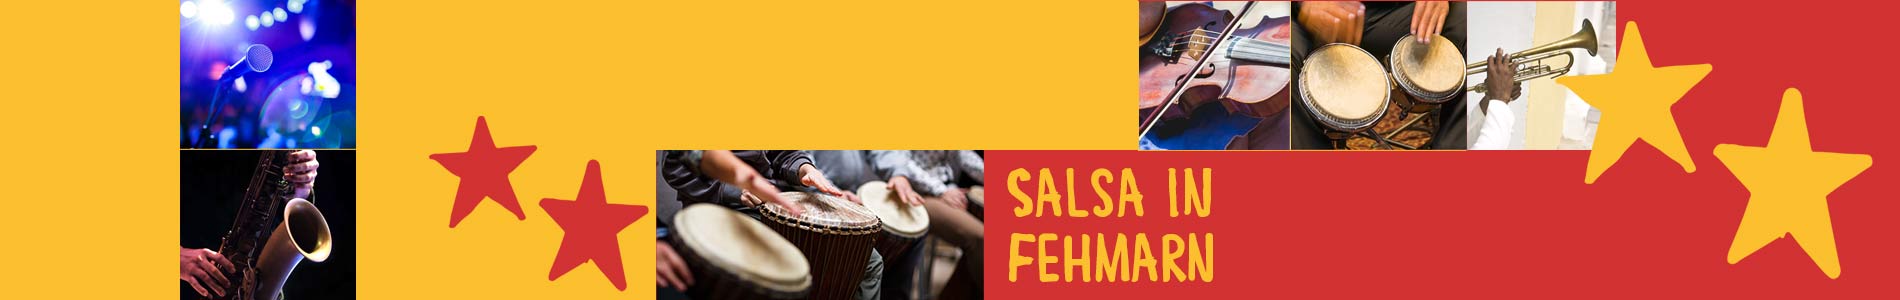 Salsa in Fehmarn – Salsa lernen und tanzen, Tanzkurse, Partys, Veranstaltungen